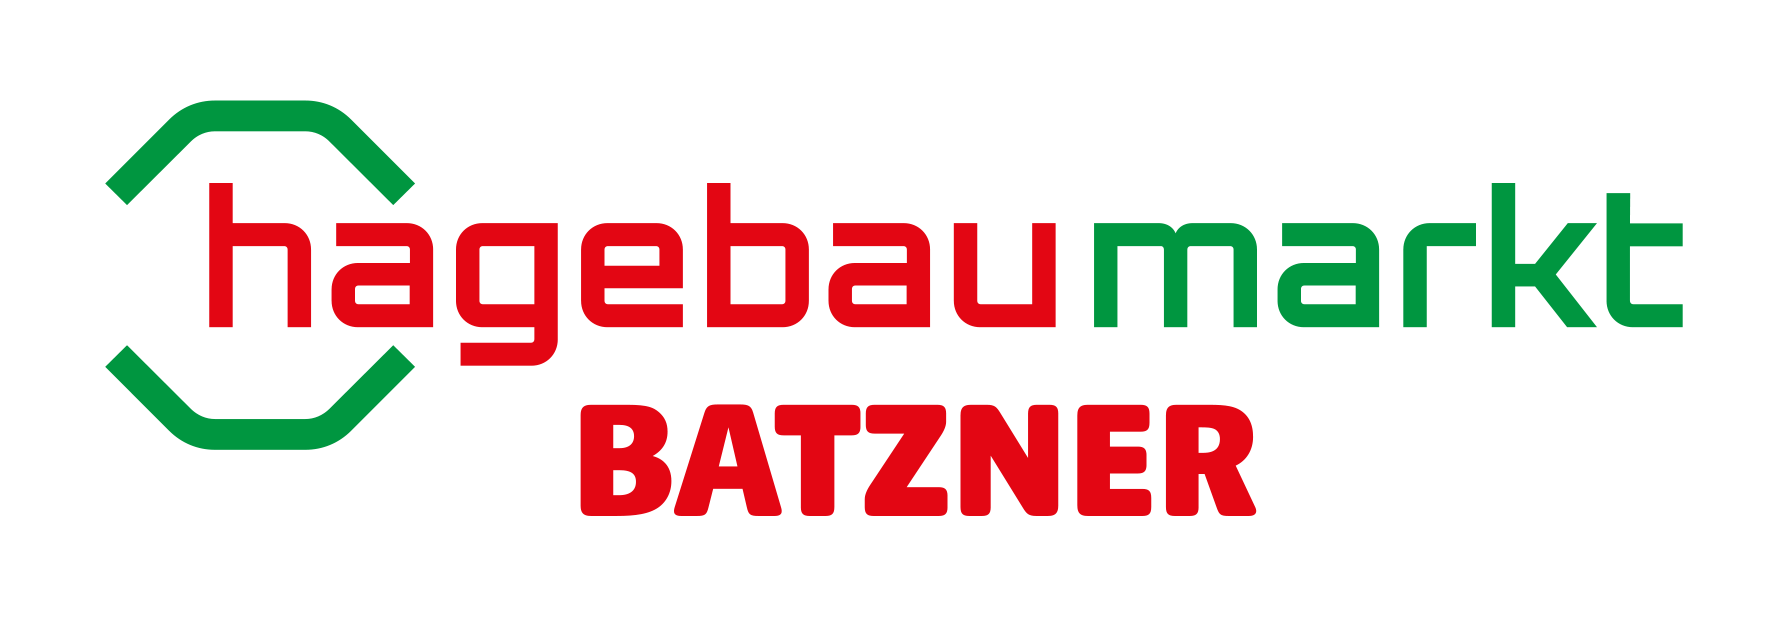 Batzner_hbm_Logo_rgb